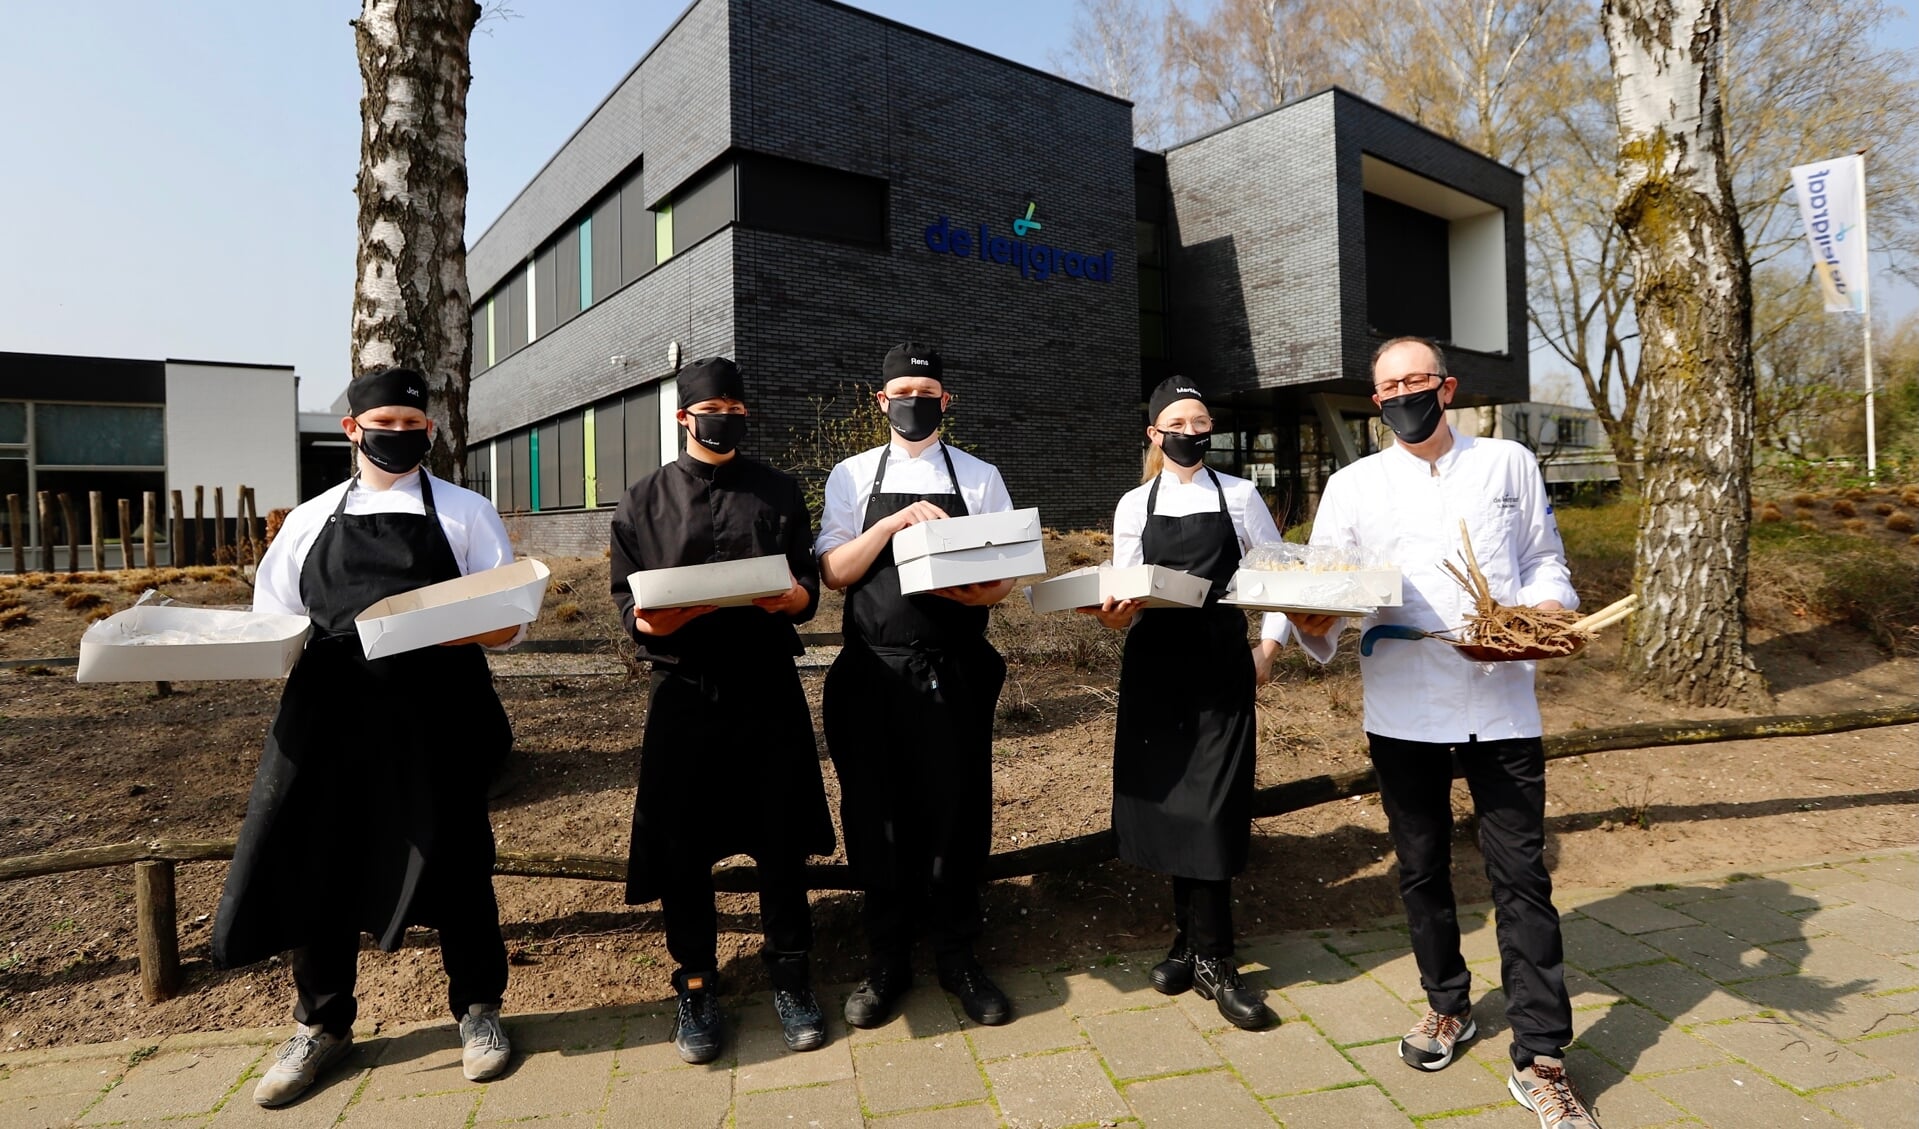 Bewapend met aspergeplant en de lekkerste gerechten trokken de aspirant chefs en hun docent richting het nabijgelegen Leijgraafhuis. (Foto: SK-Media)